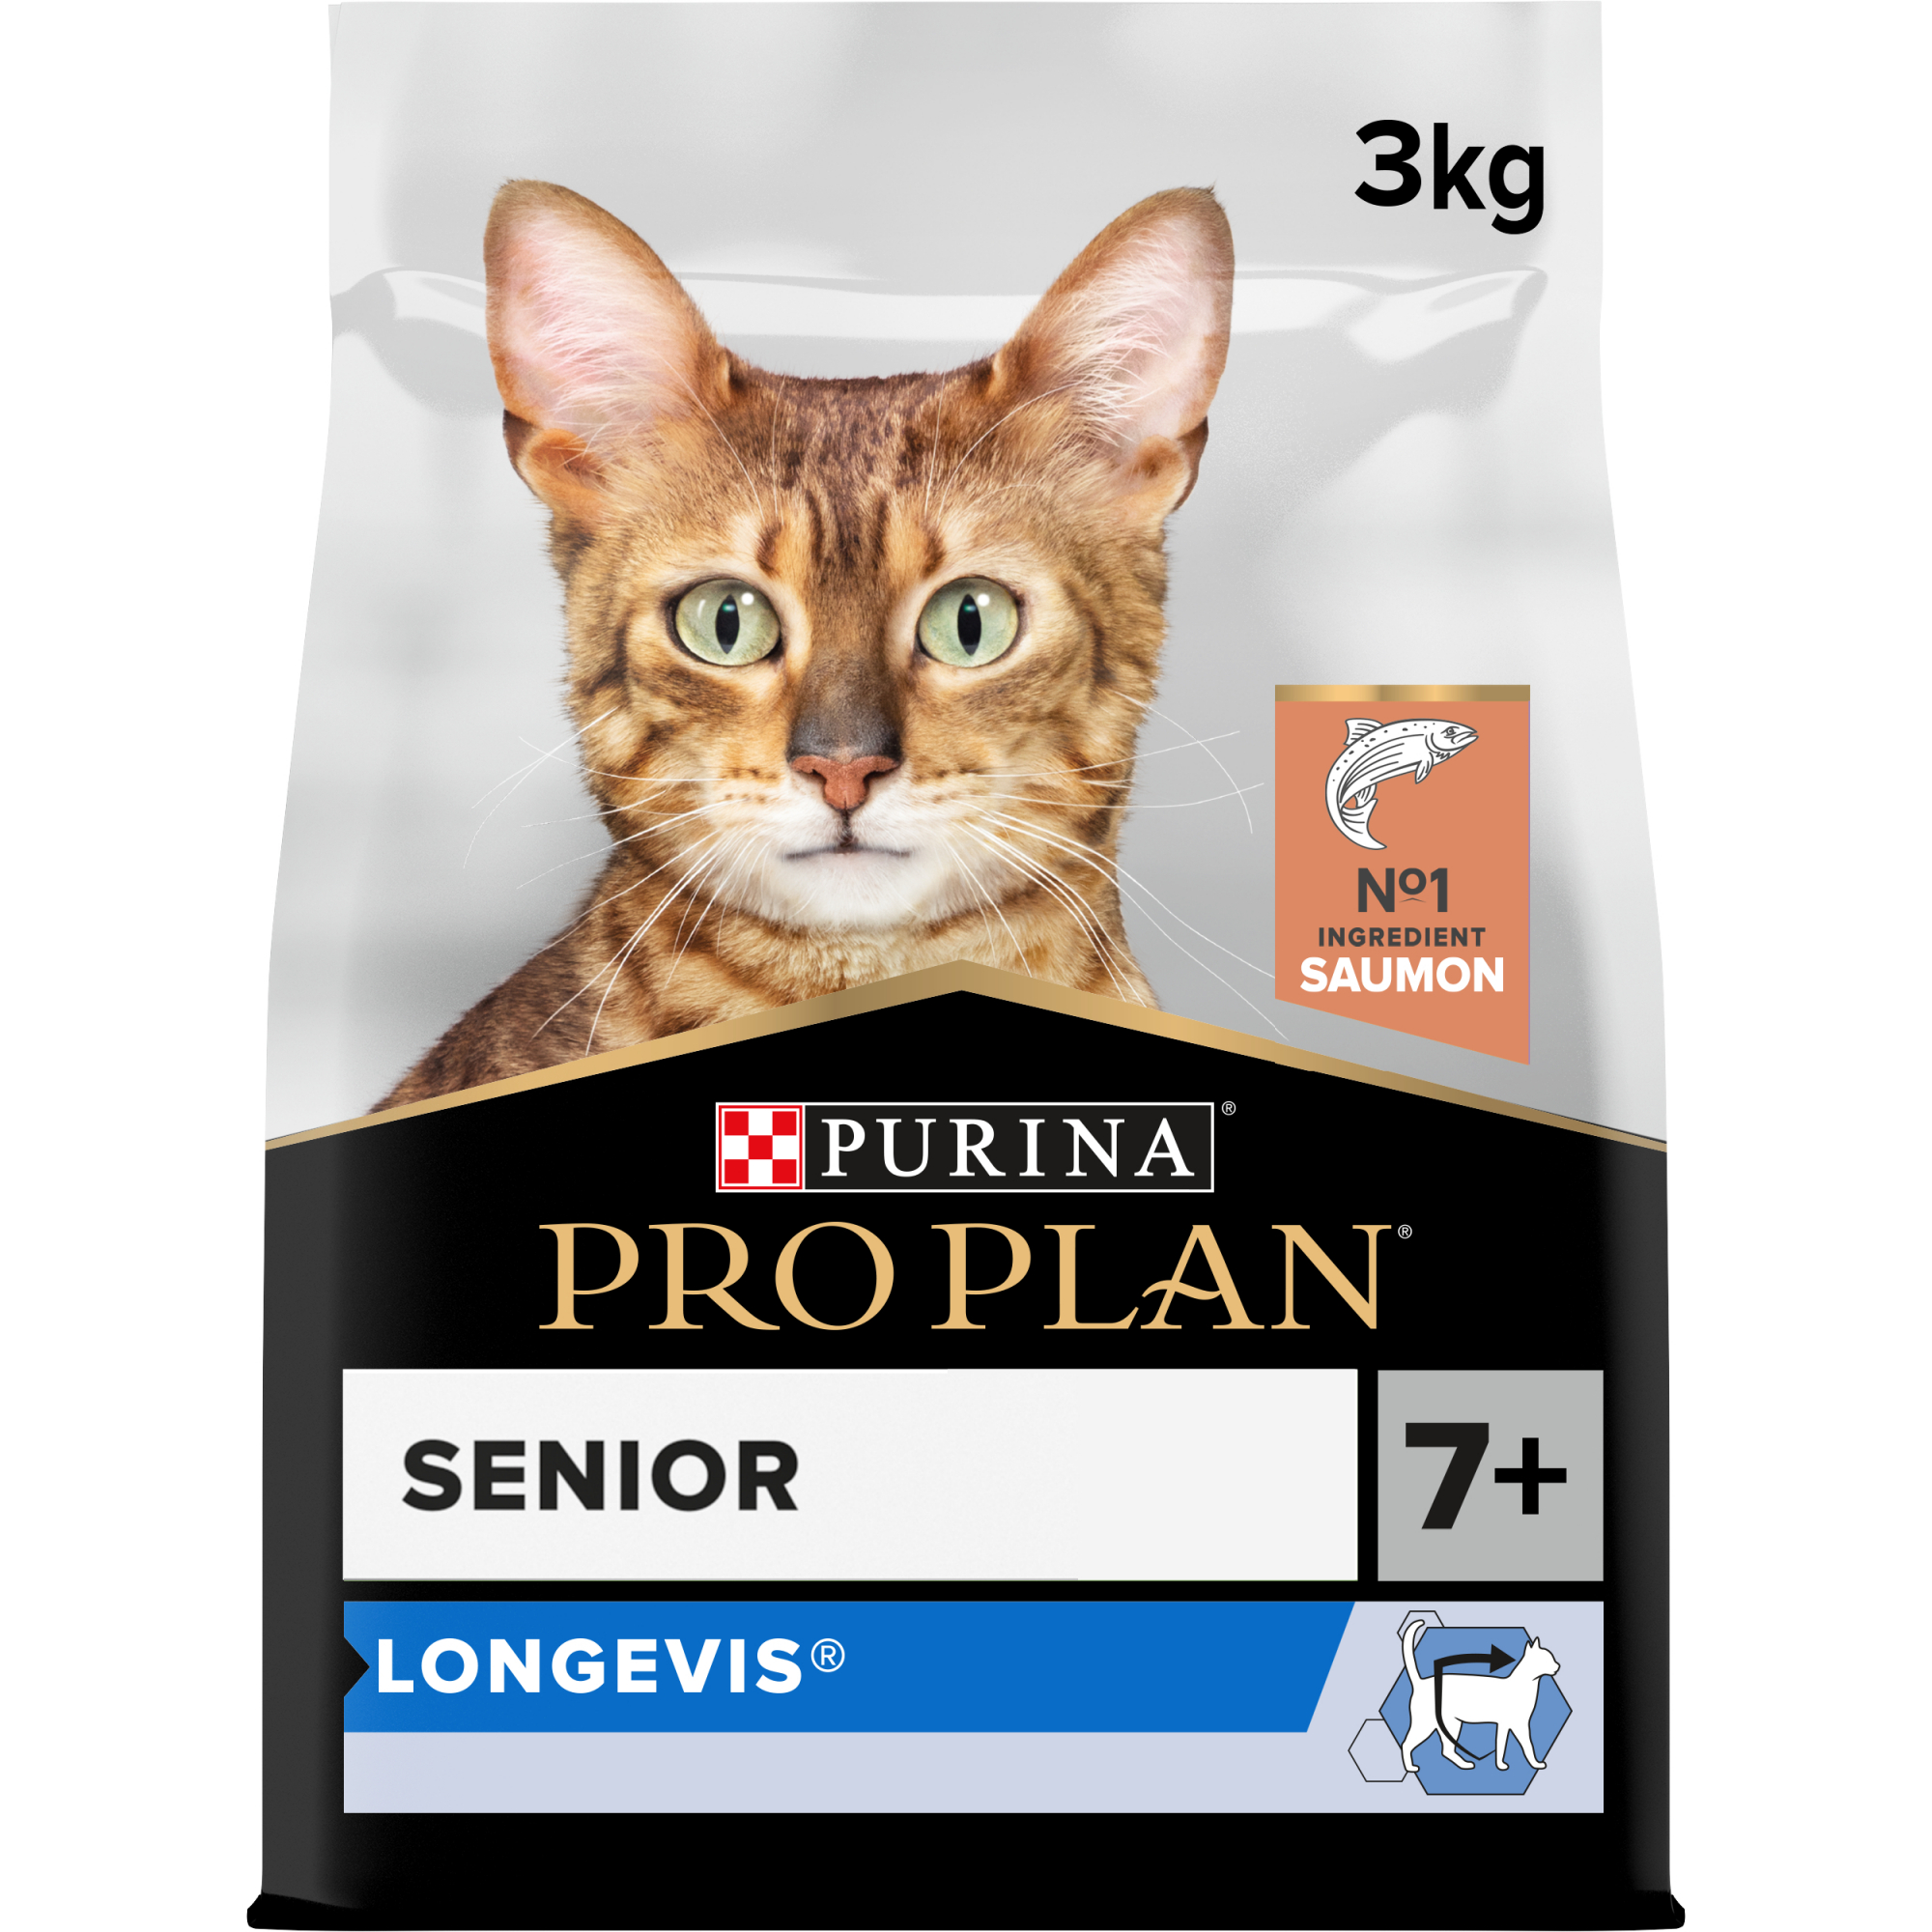 PURINA PRO PLAN Original Senior Longevis - Alimento seco para gato adulto sénior de salmão